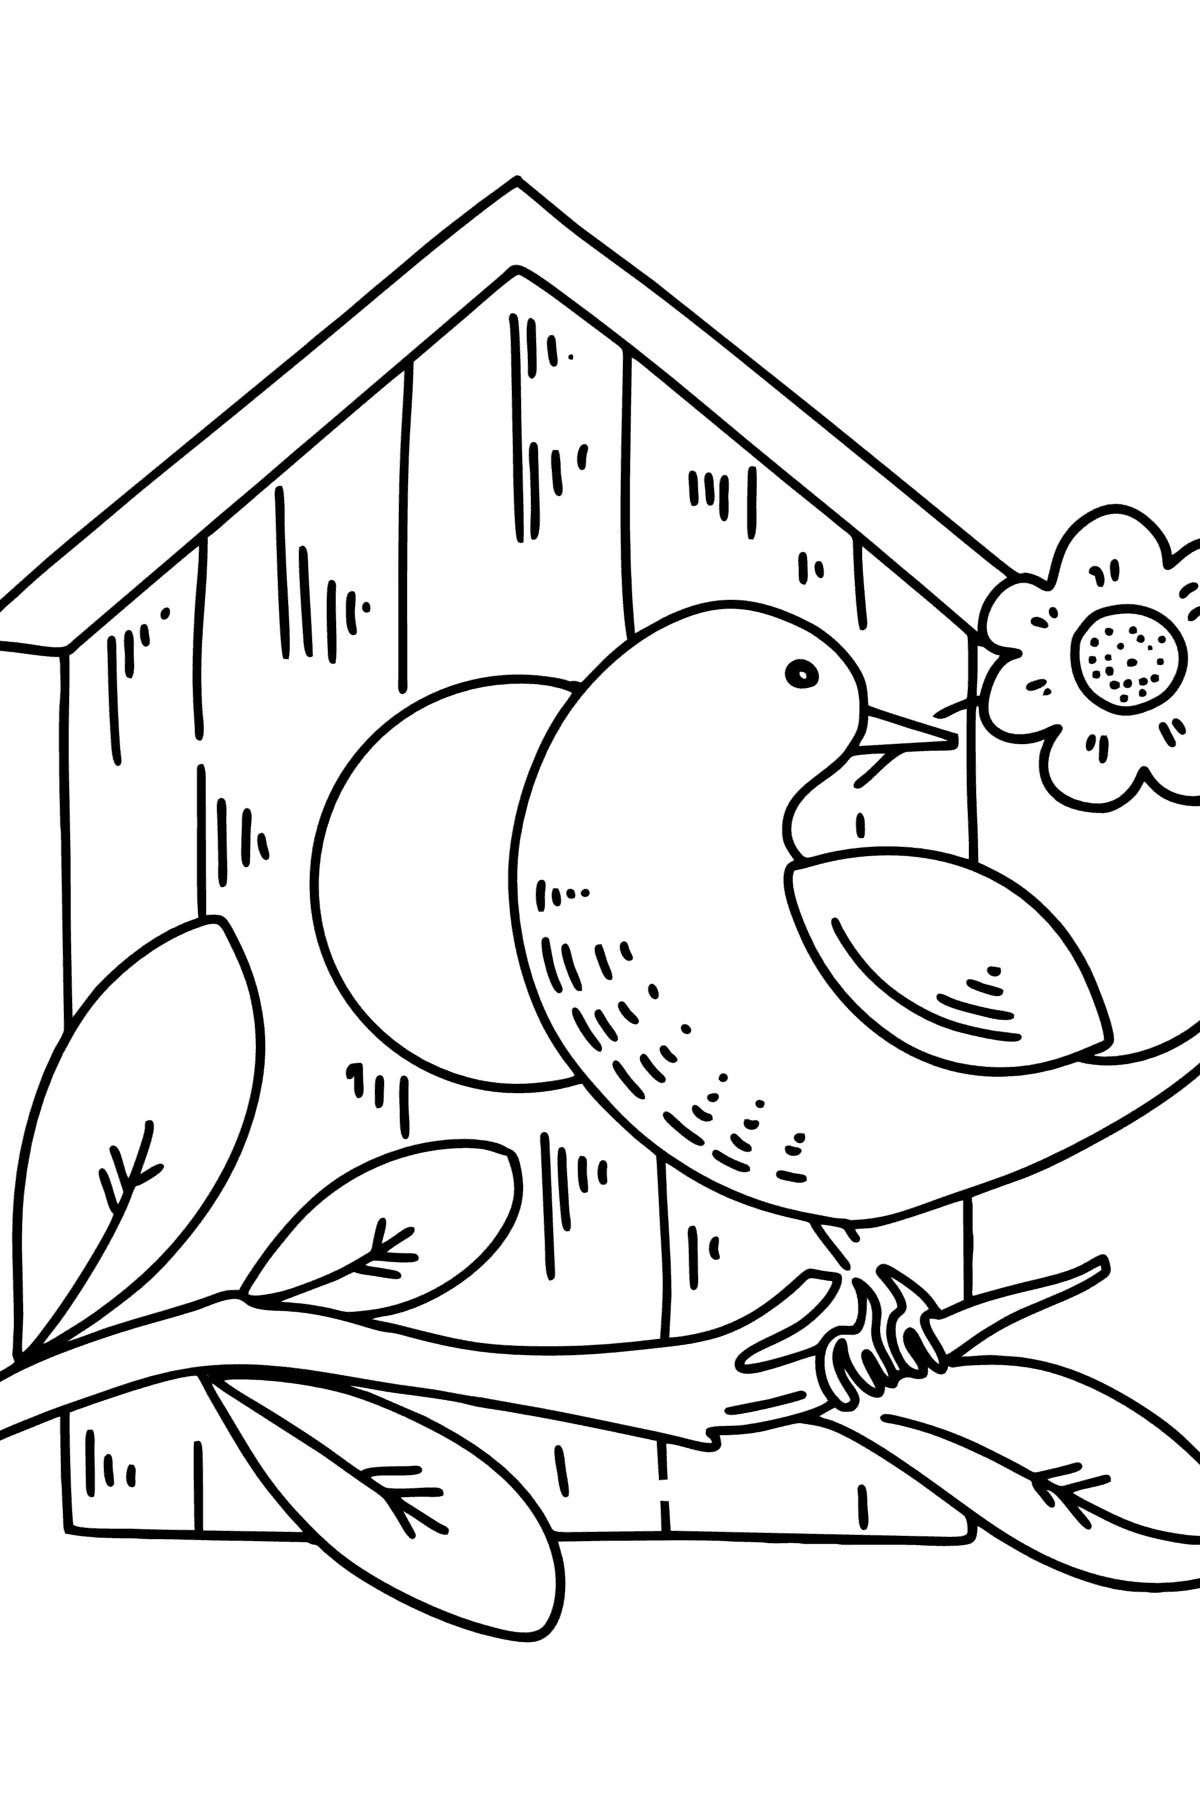 Ausmalbild Star im Vogelhaus - Malvorlagen für Kinder